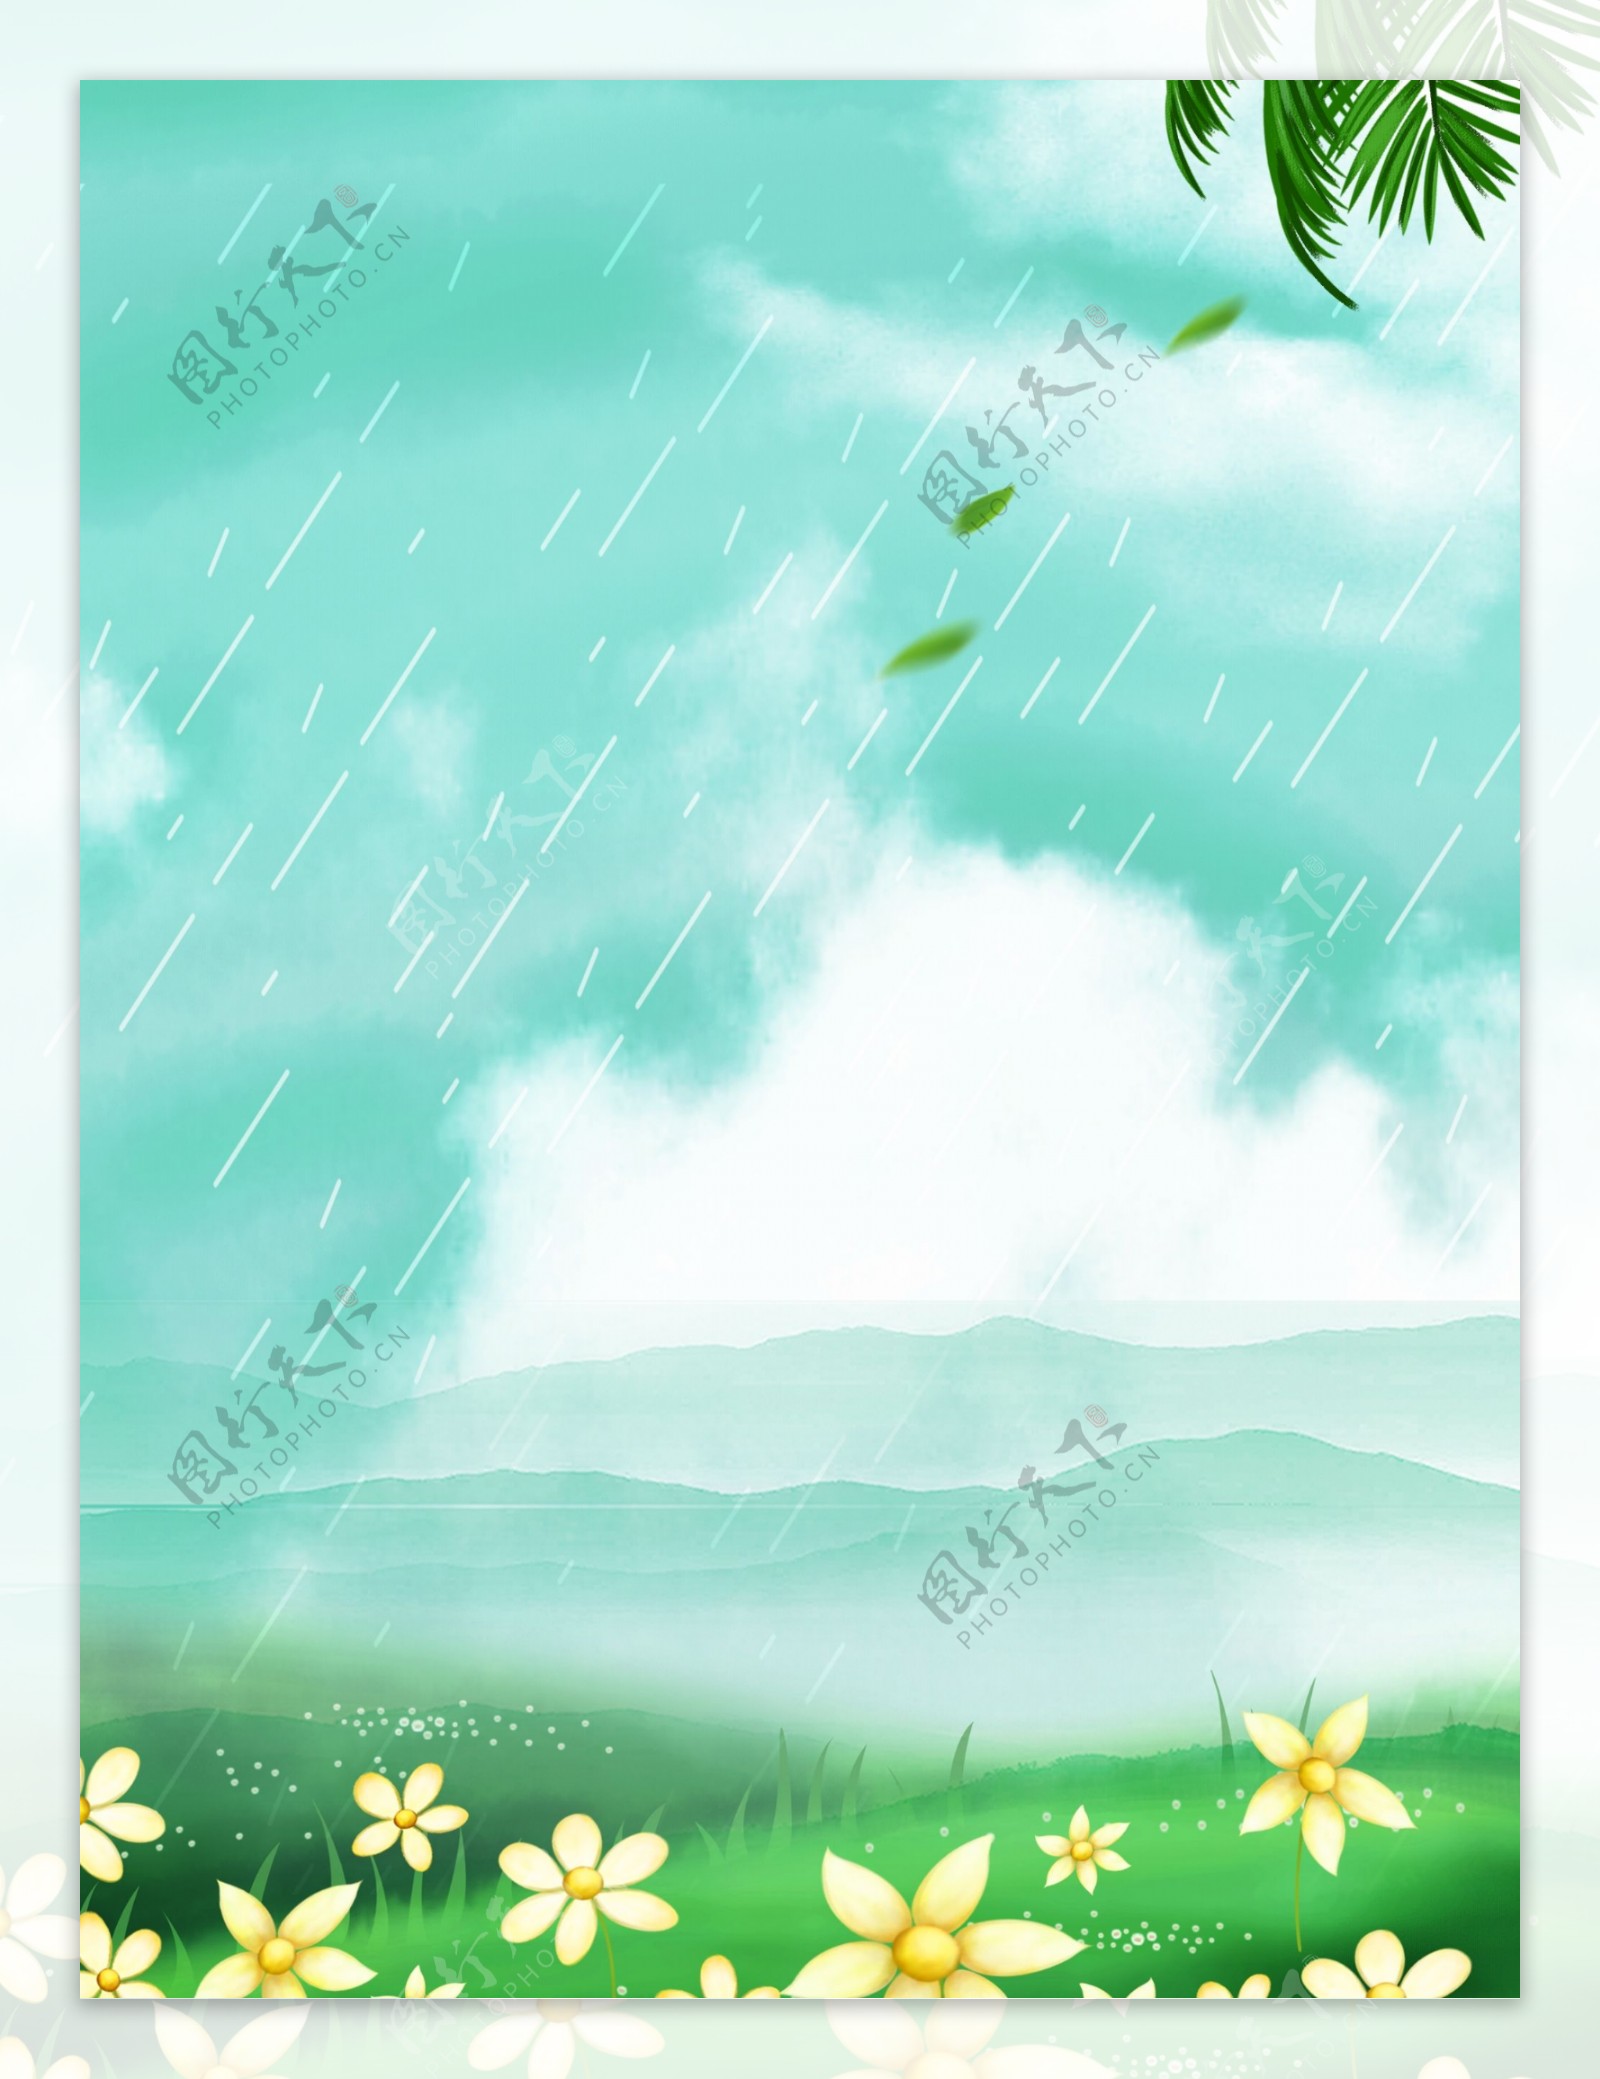 彩绘雨水节气花丛背景设计